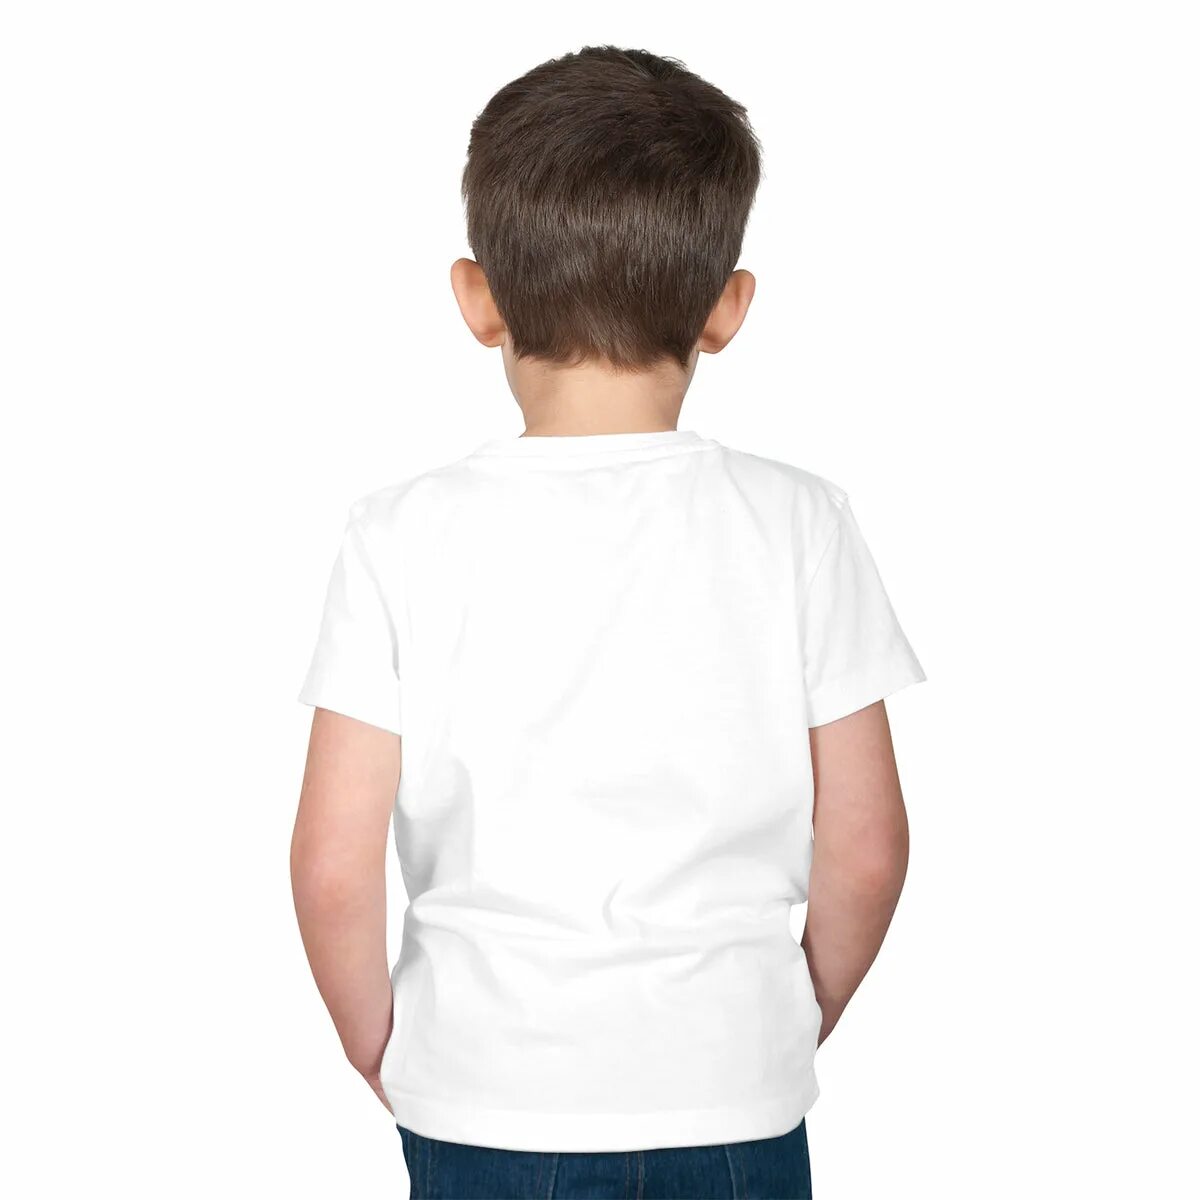 Ребенок в белой футболке. Мальчик спереди